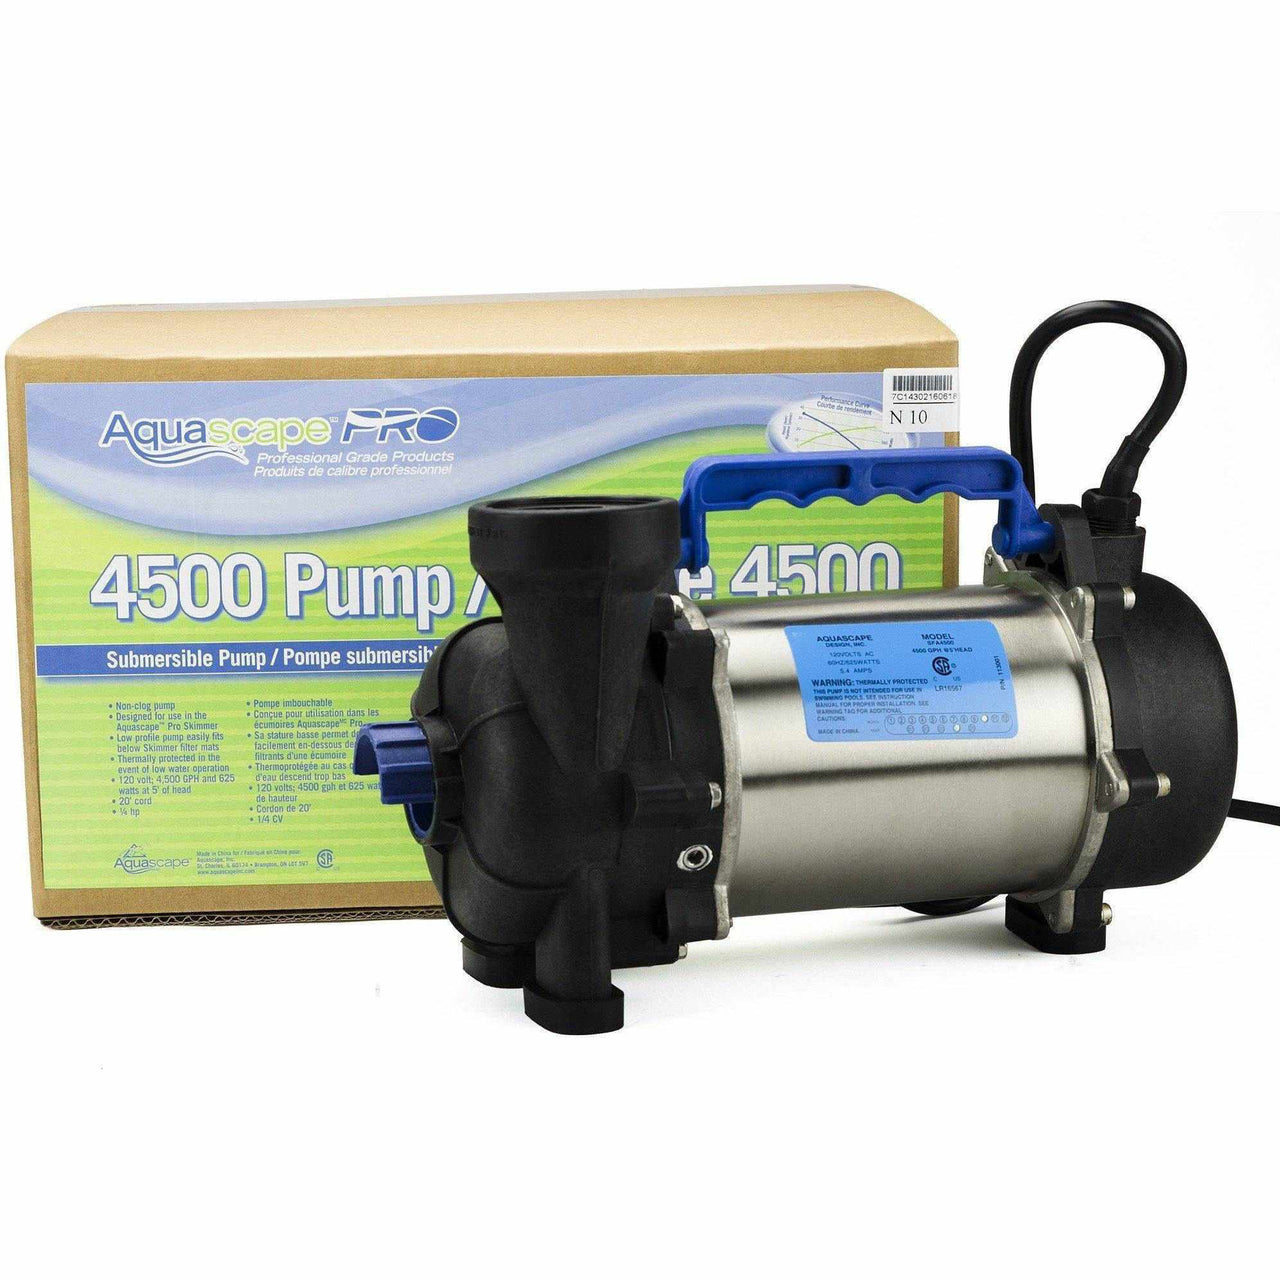 AquascapePRO 4500 Pump